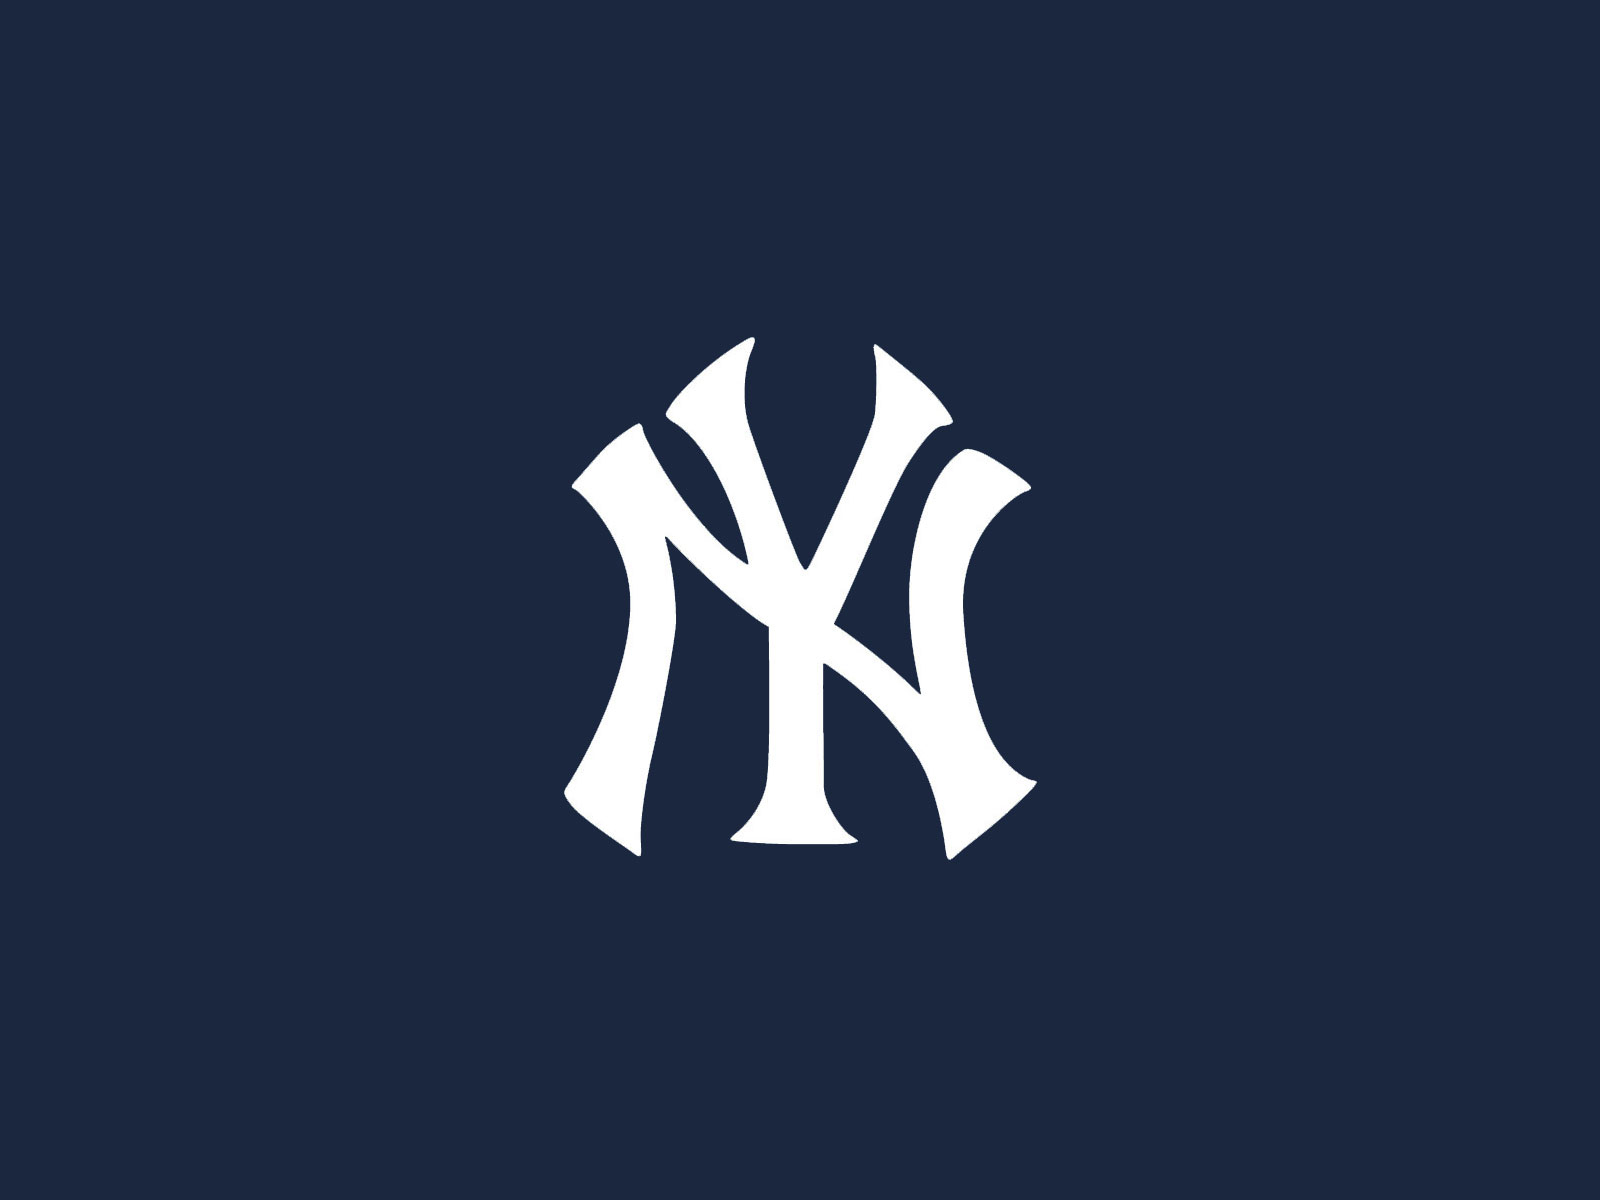 Desktop Wallpaper Of Yankees Puter Image